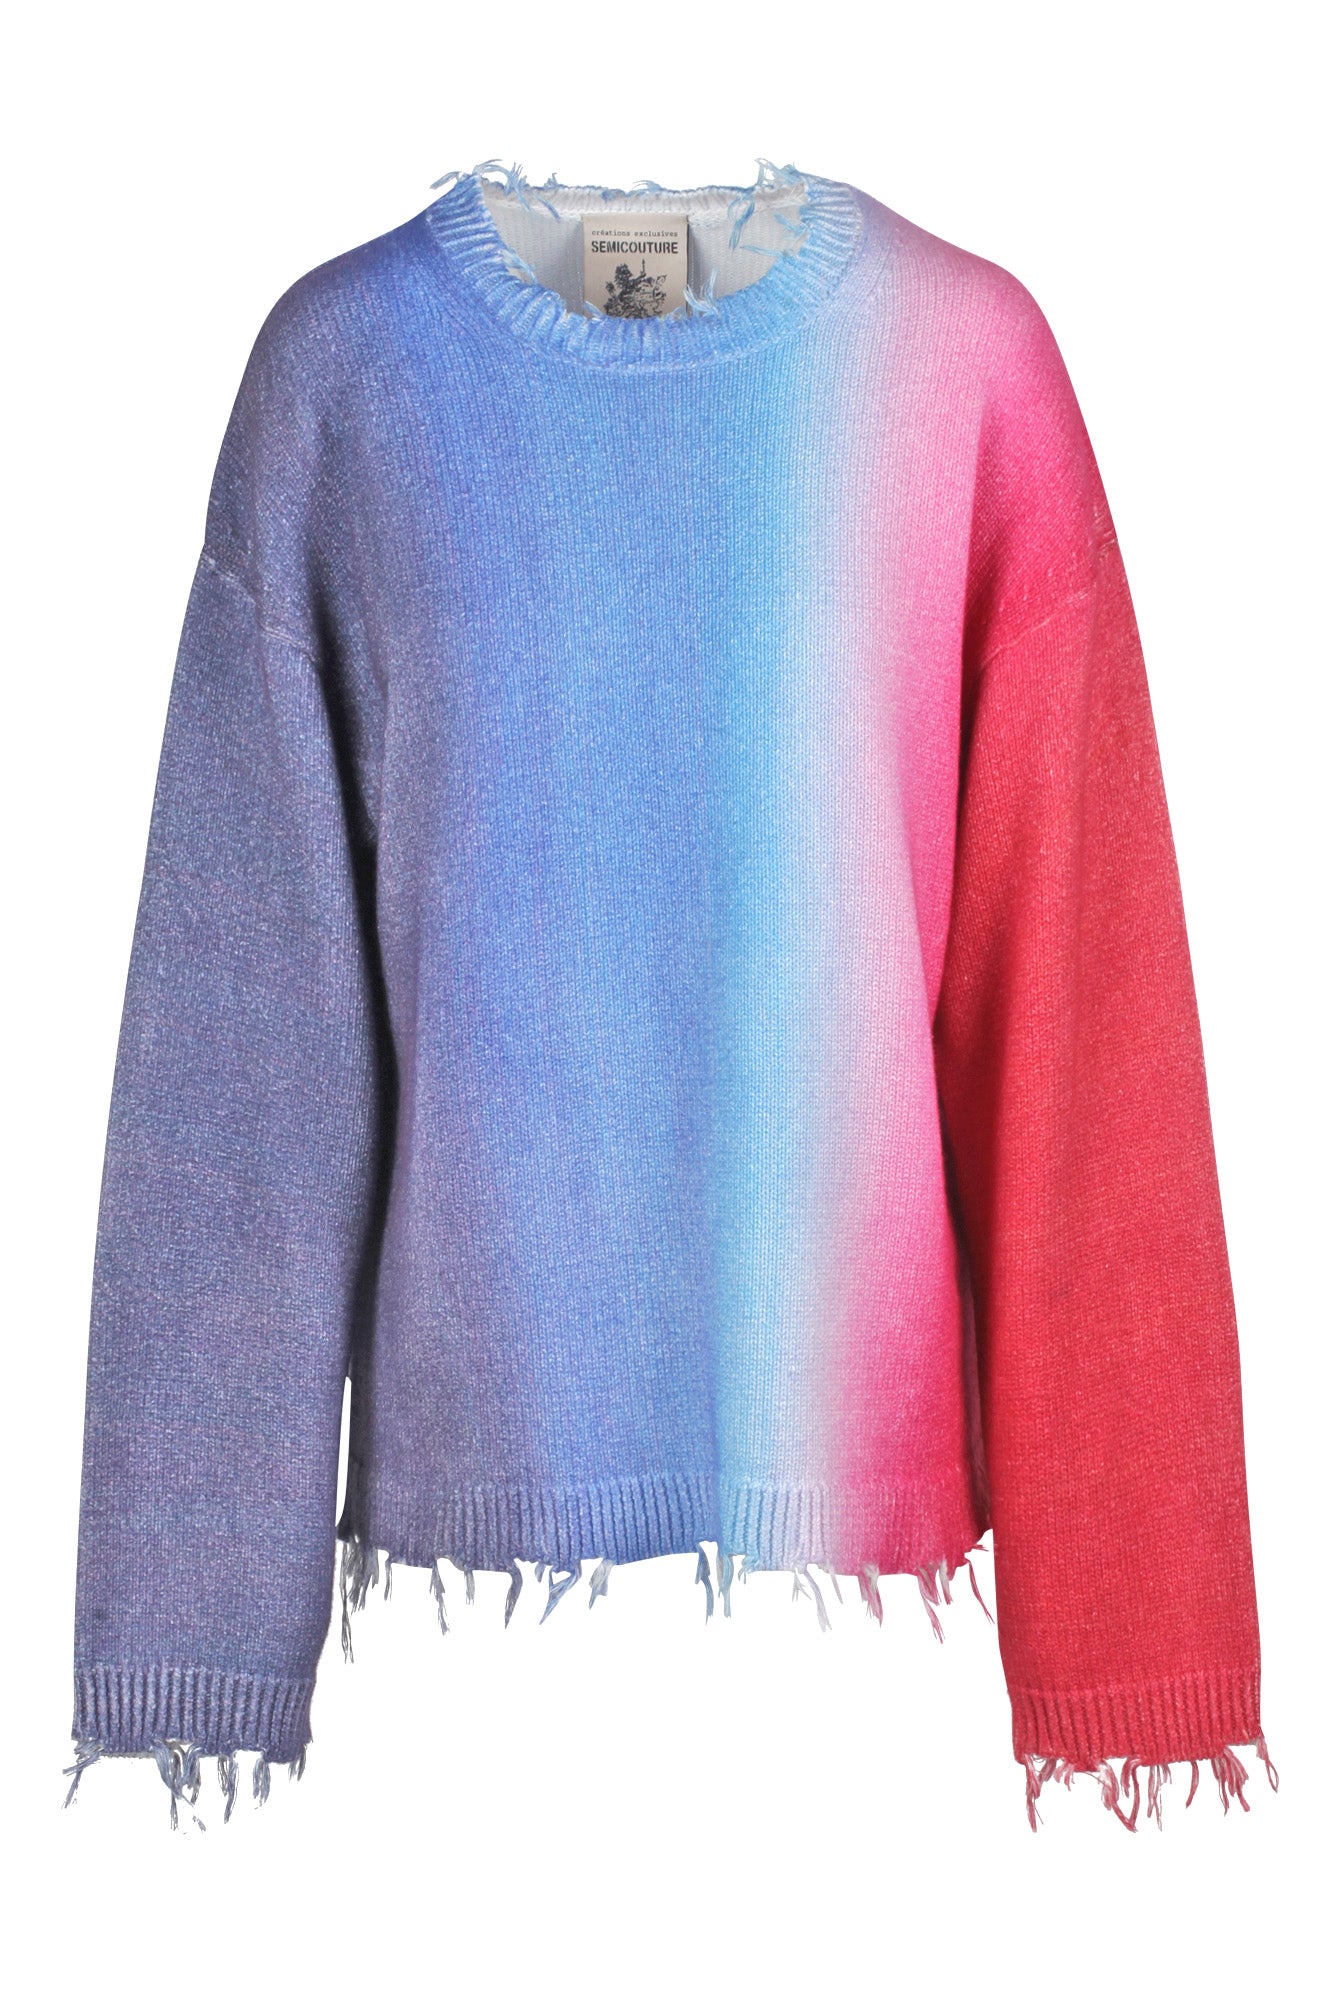 Semi Couture - Maglia - 430493 - Rosa/Azzurro